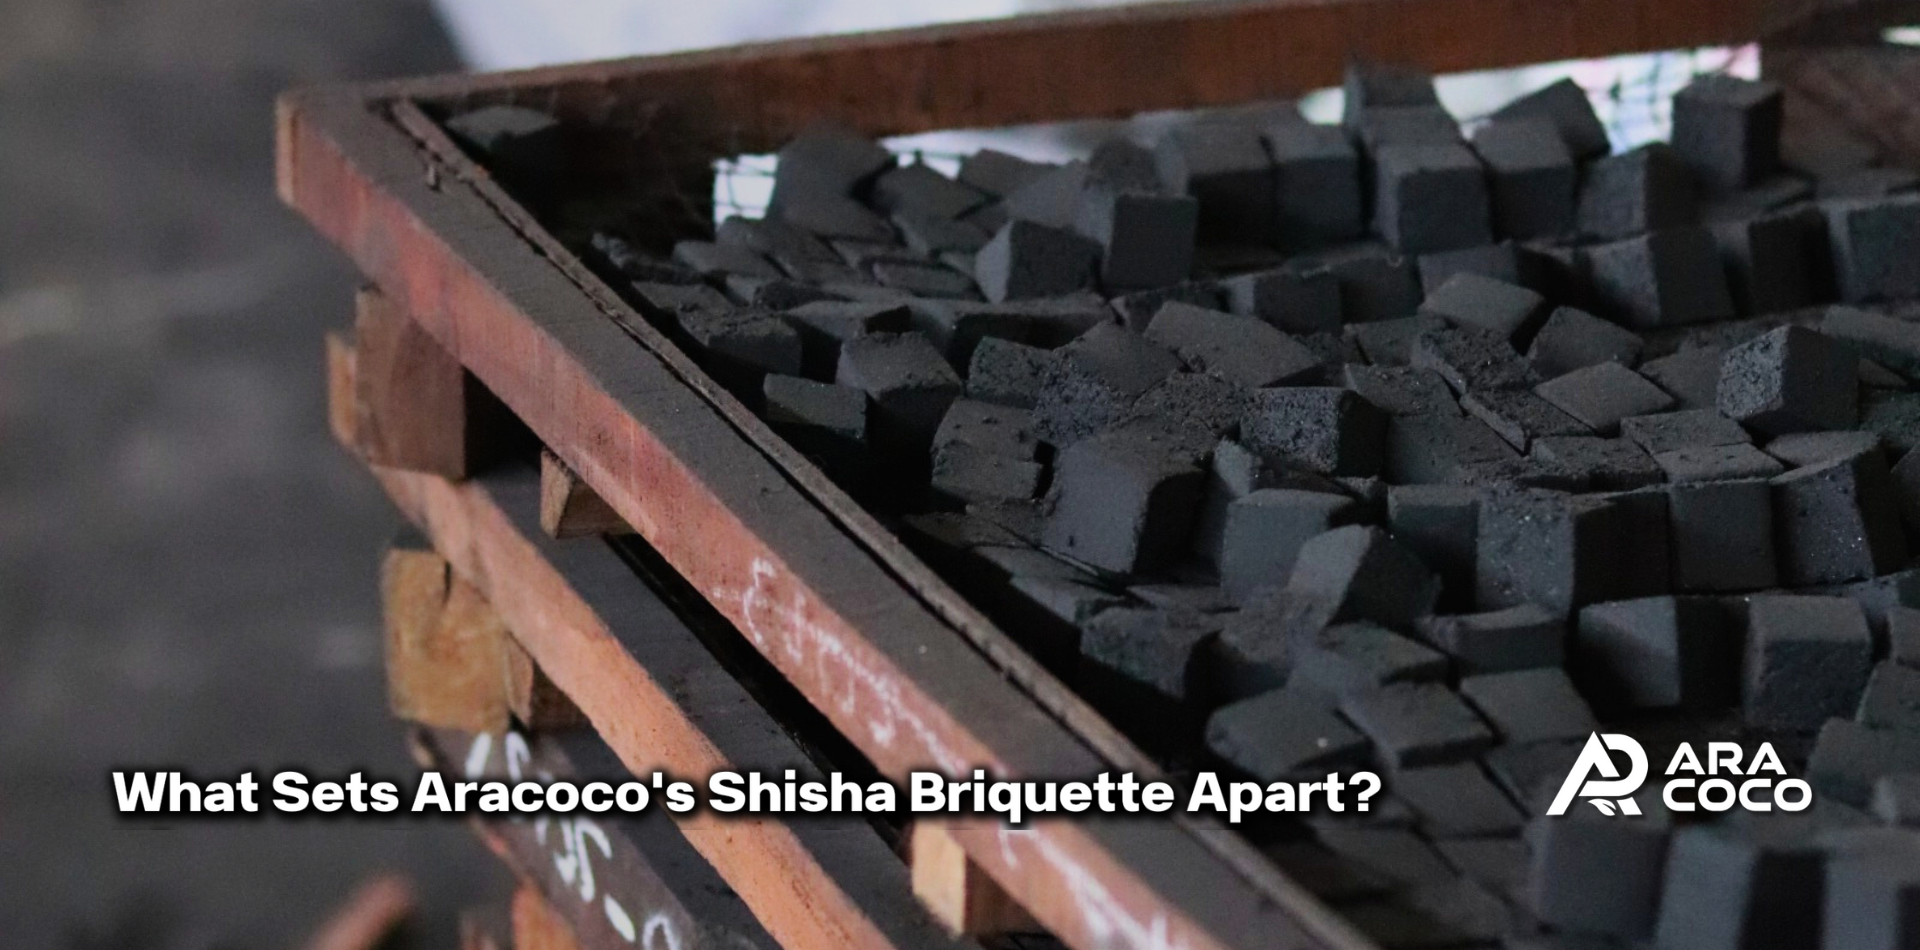 What Sets Aracoco's Shisha Briquette Apart? Discover Aracoco's Premium Coconut Shell Charcoal Briquette